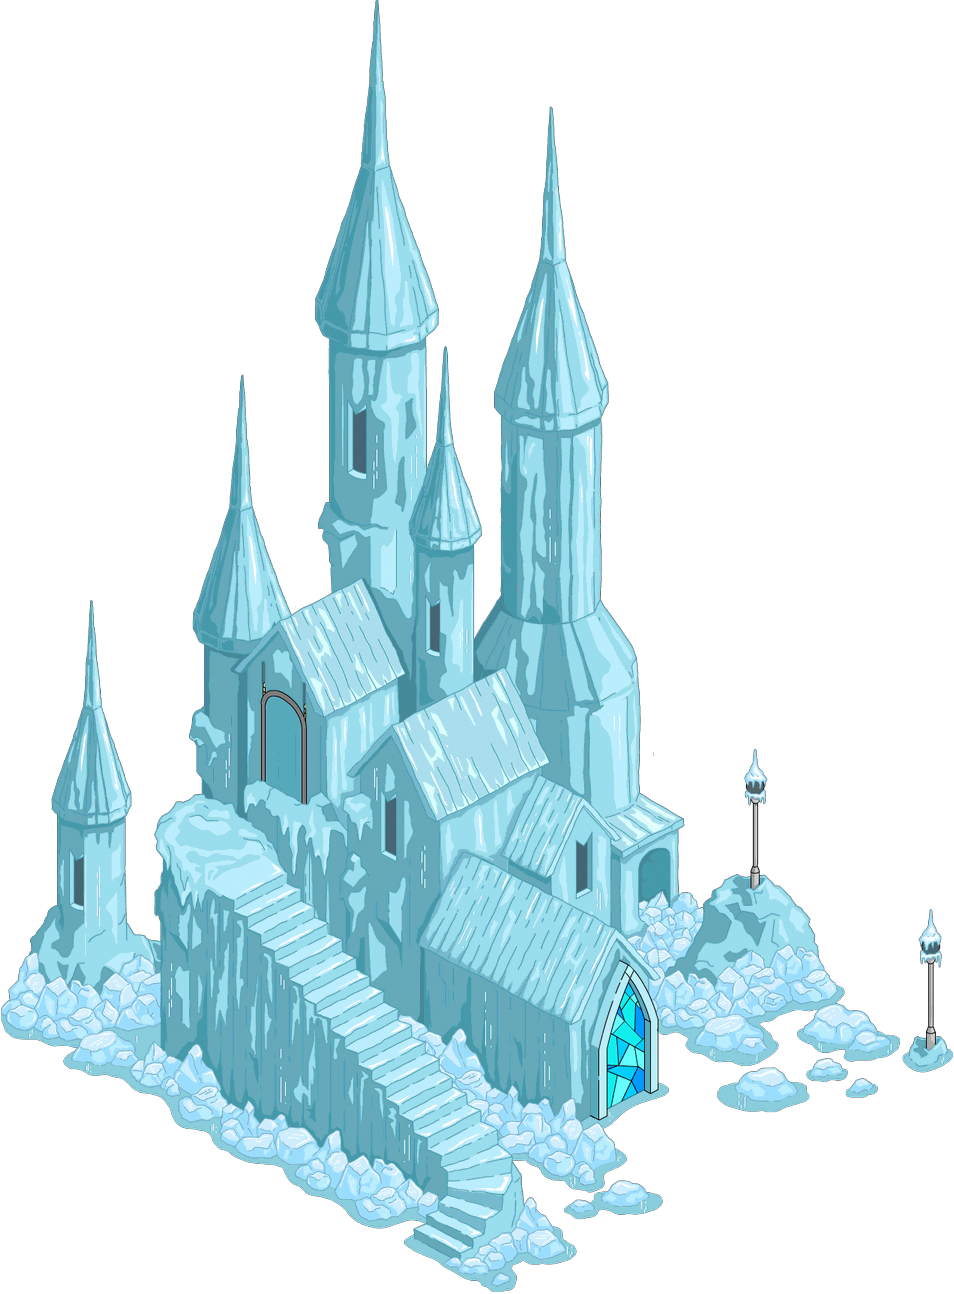 Imagens de castelo frozen png